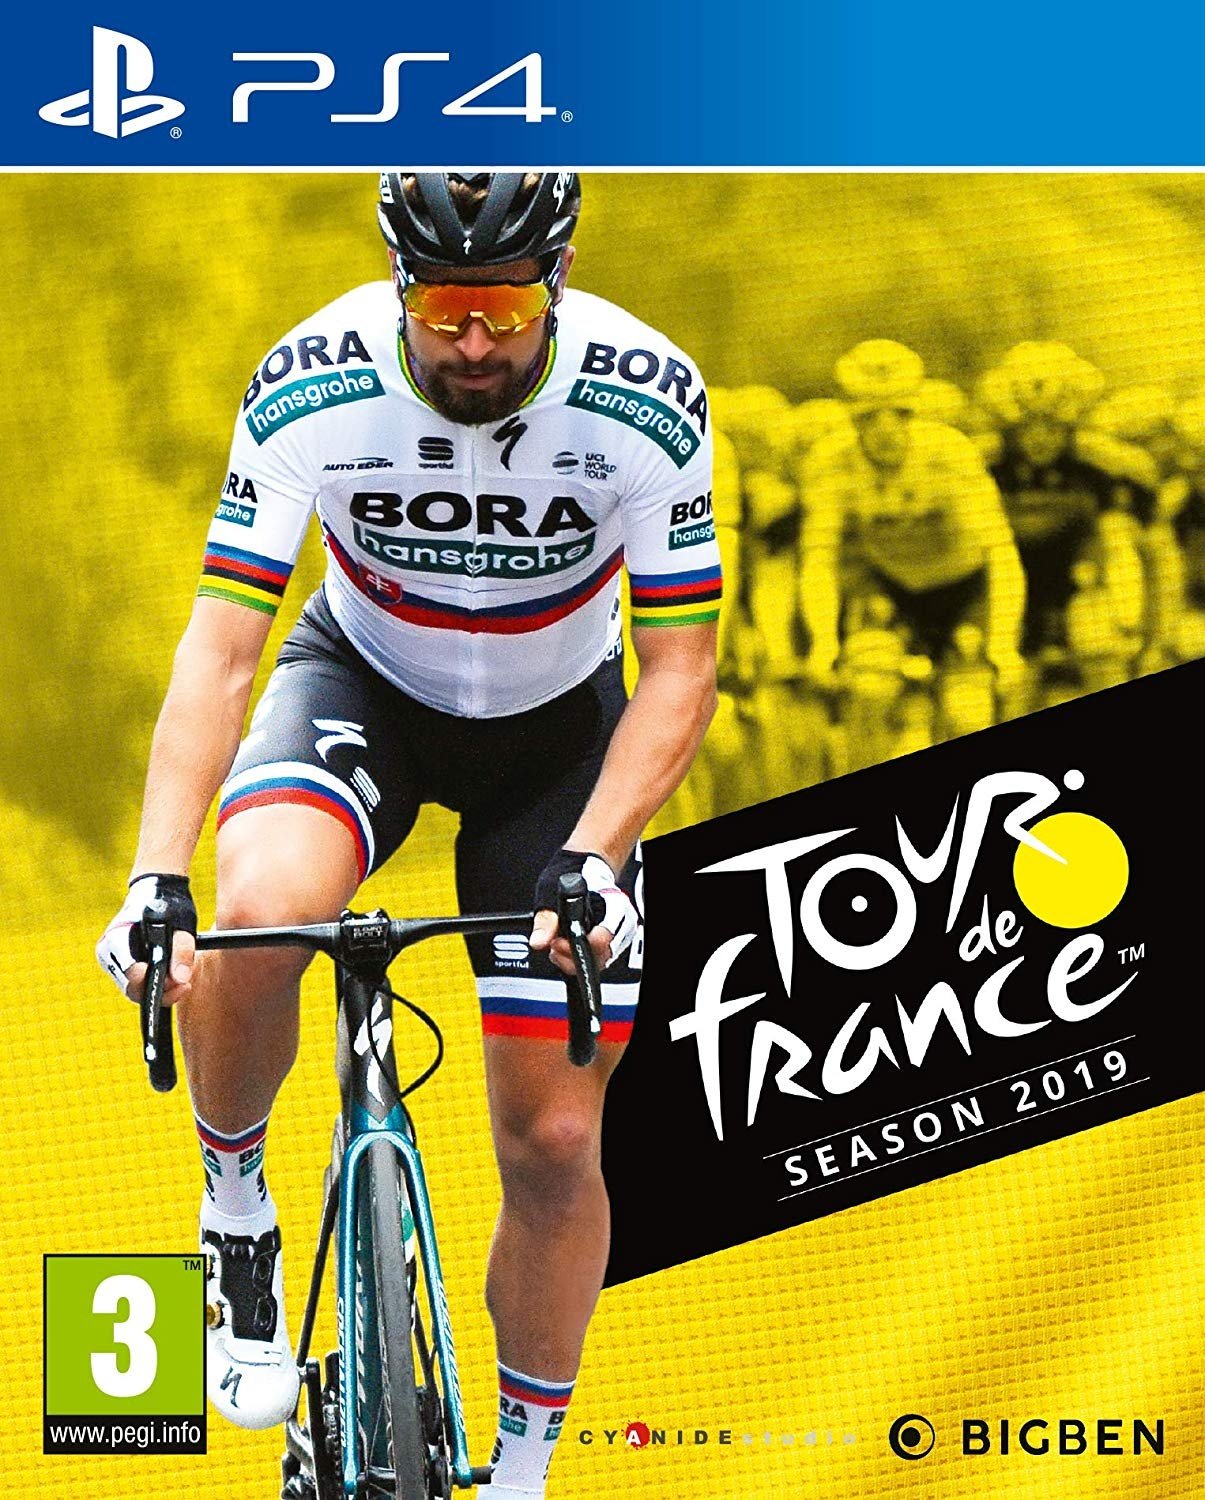 Image of Tour de France 2019